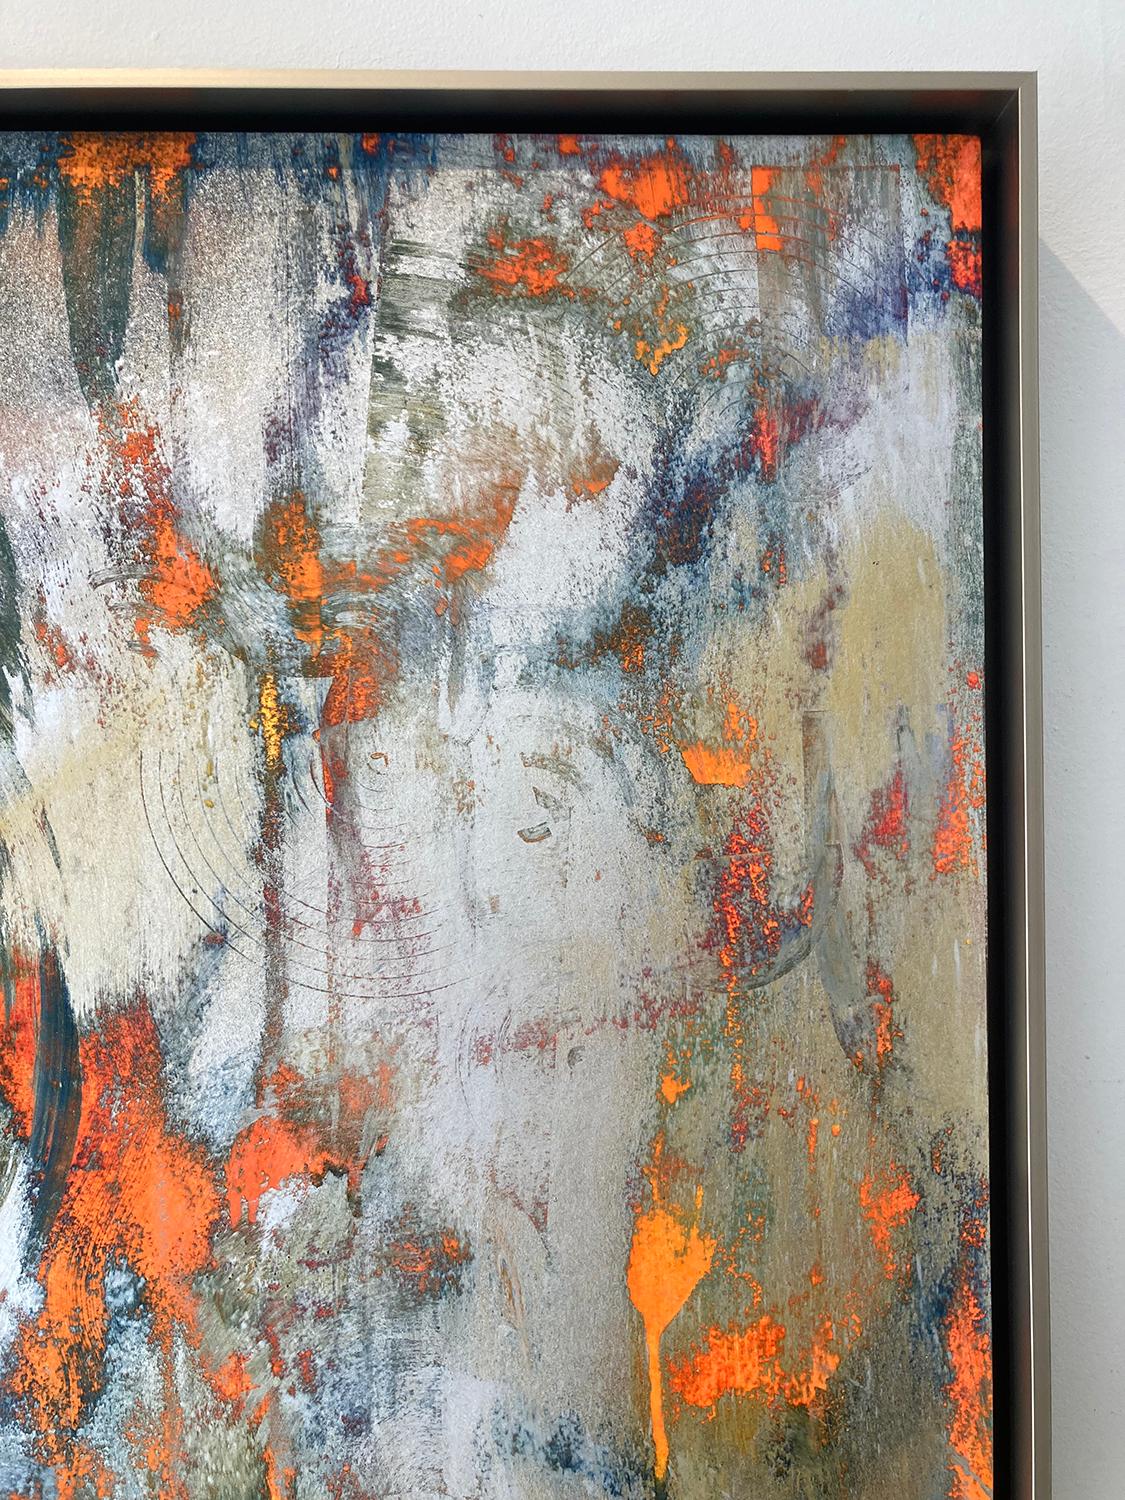 Gestische abstrakte expressionistische Malerei auf Archivpapier, aufgezogen auf eine Platte mit Gold- und Silbermetallic-Pulver und Akzenten in Orange und Dunkelblau
